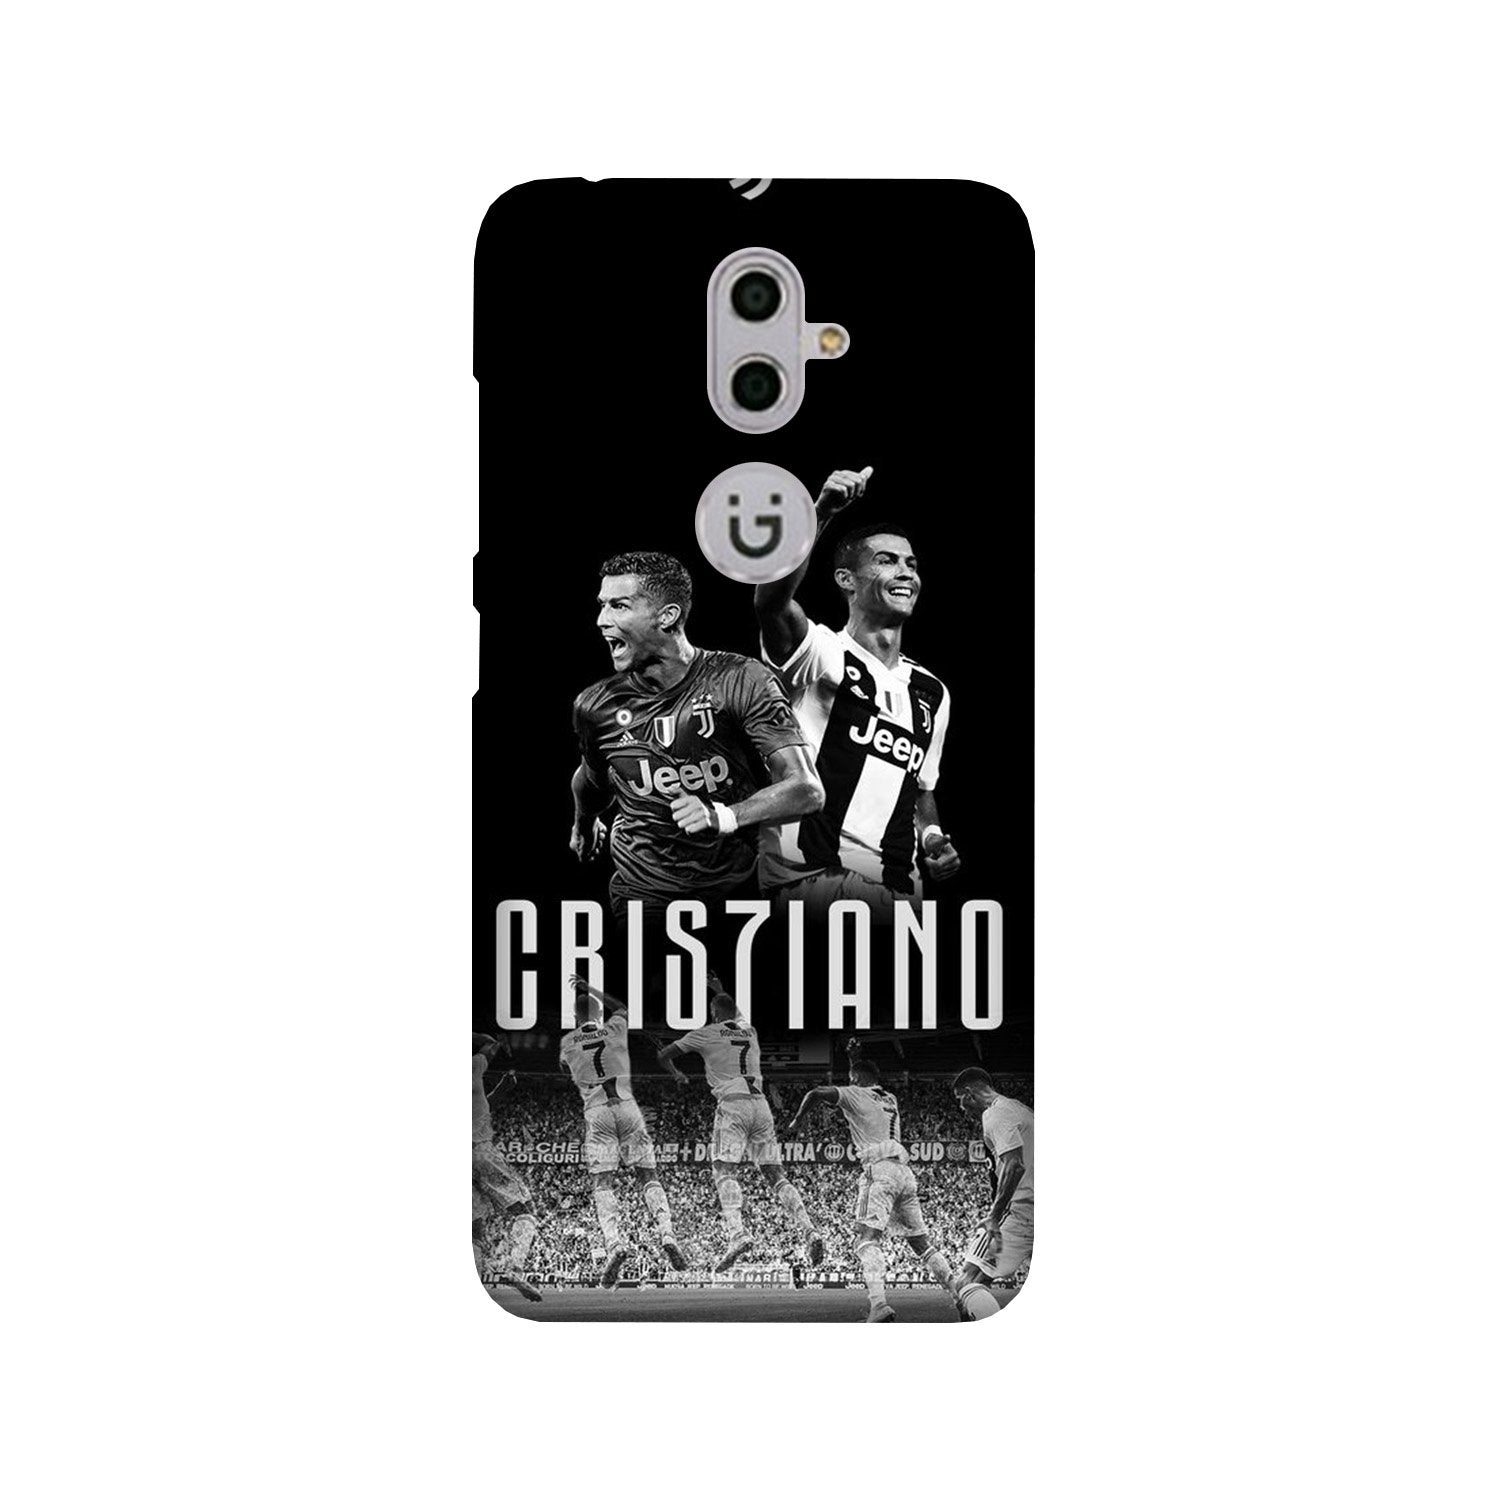 Cristiano Case for Gionee S9(Design - 165)